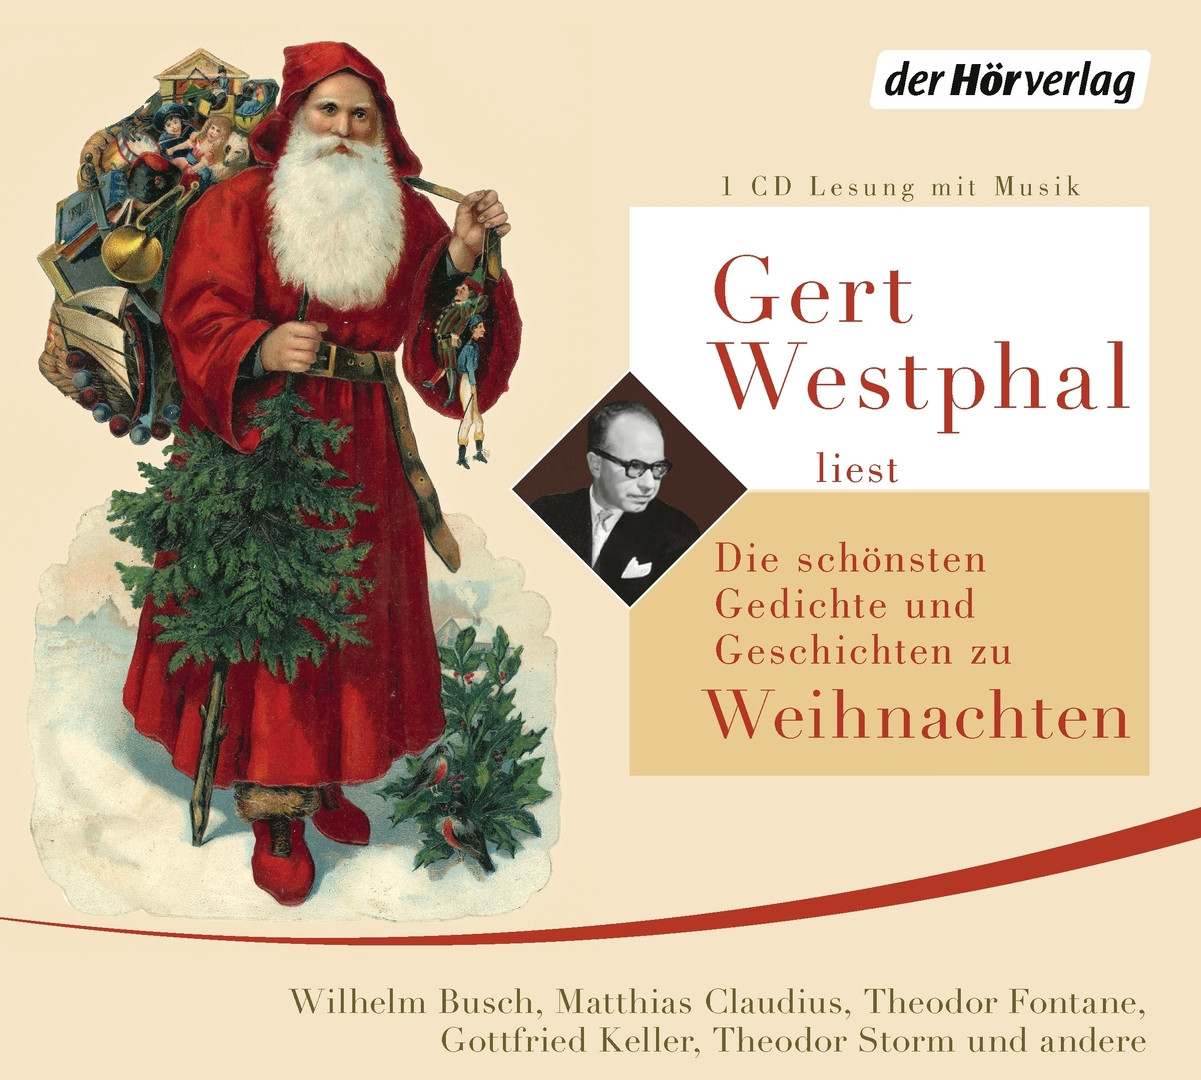 Gert Westphal liest Die schönsten Gedichte und Geschichten zu Weihnachten